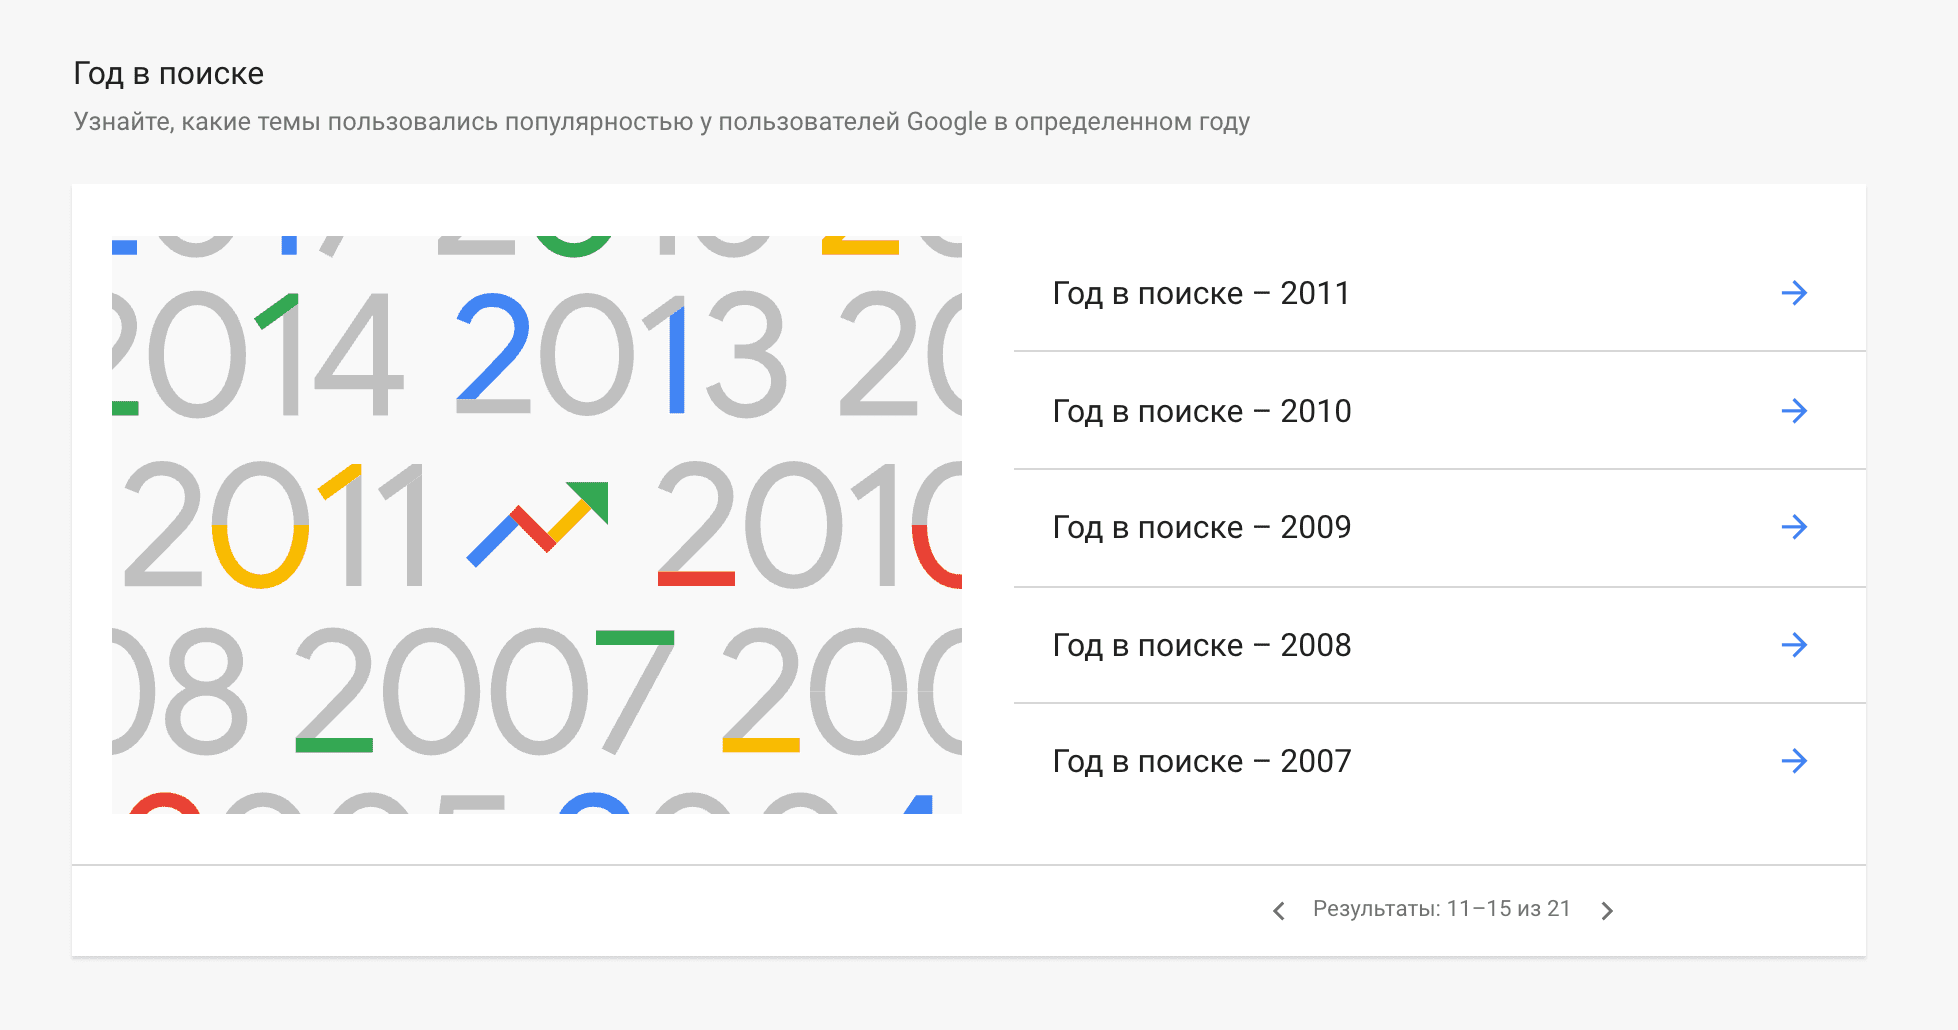 Популярные запросы по годам в Google Trends